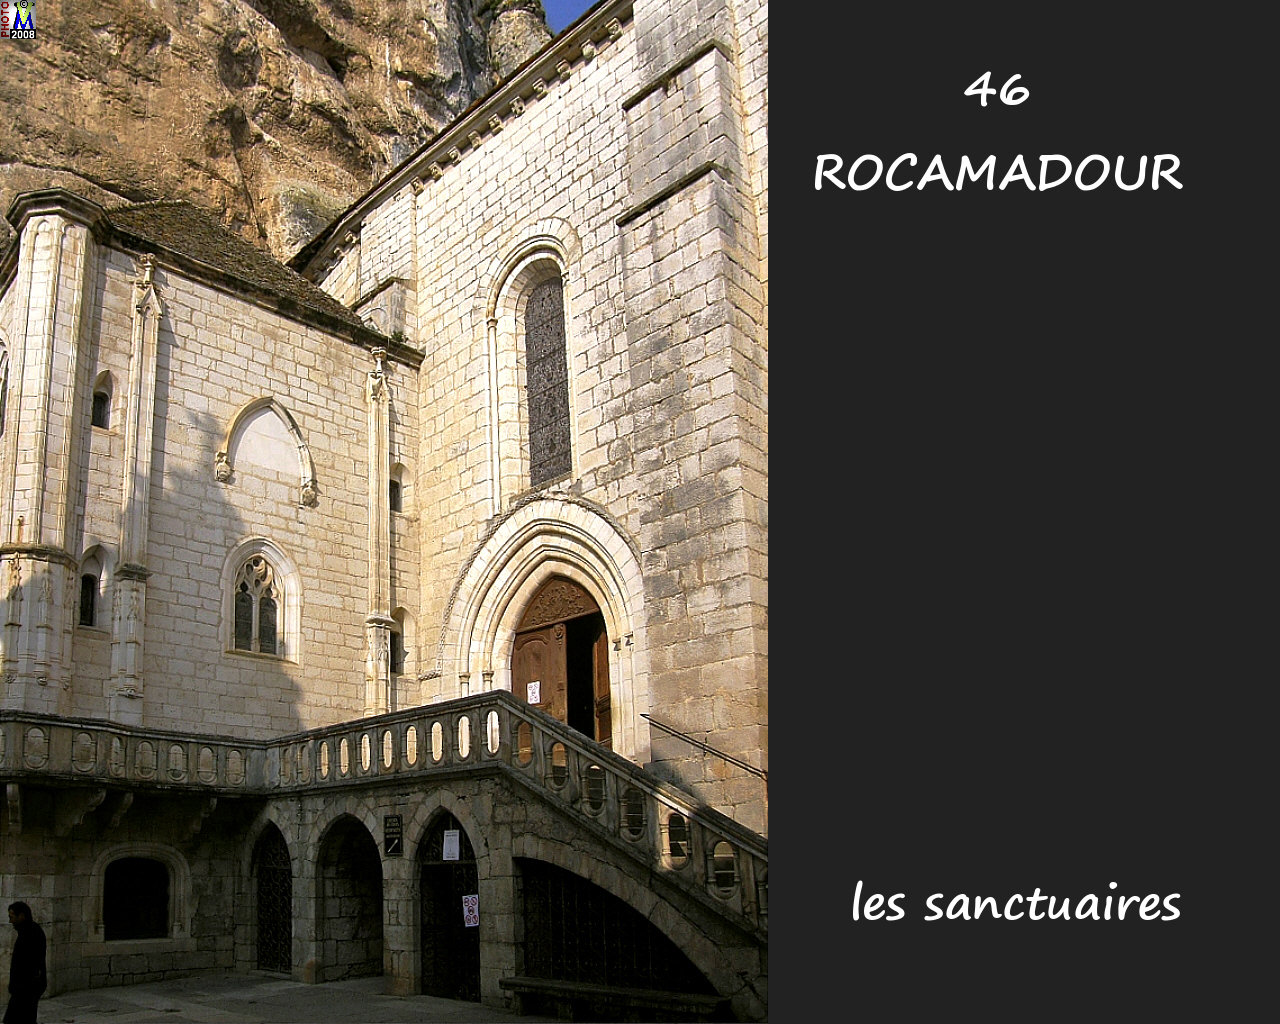 46ROCAMADOUR_sanctuaires_250.jpg